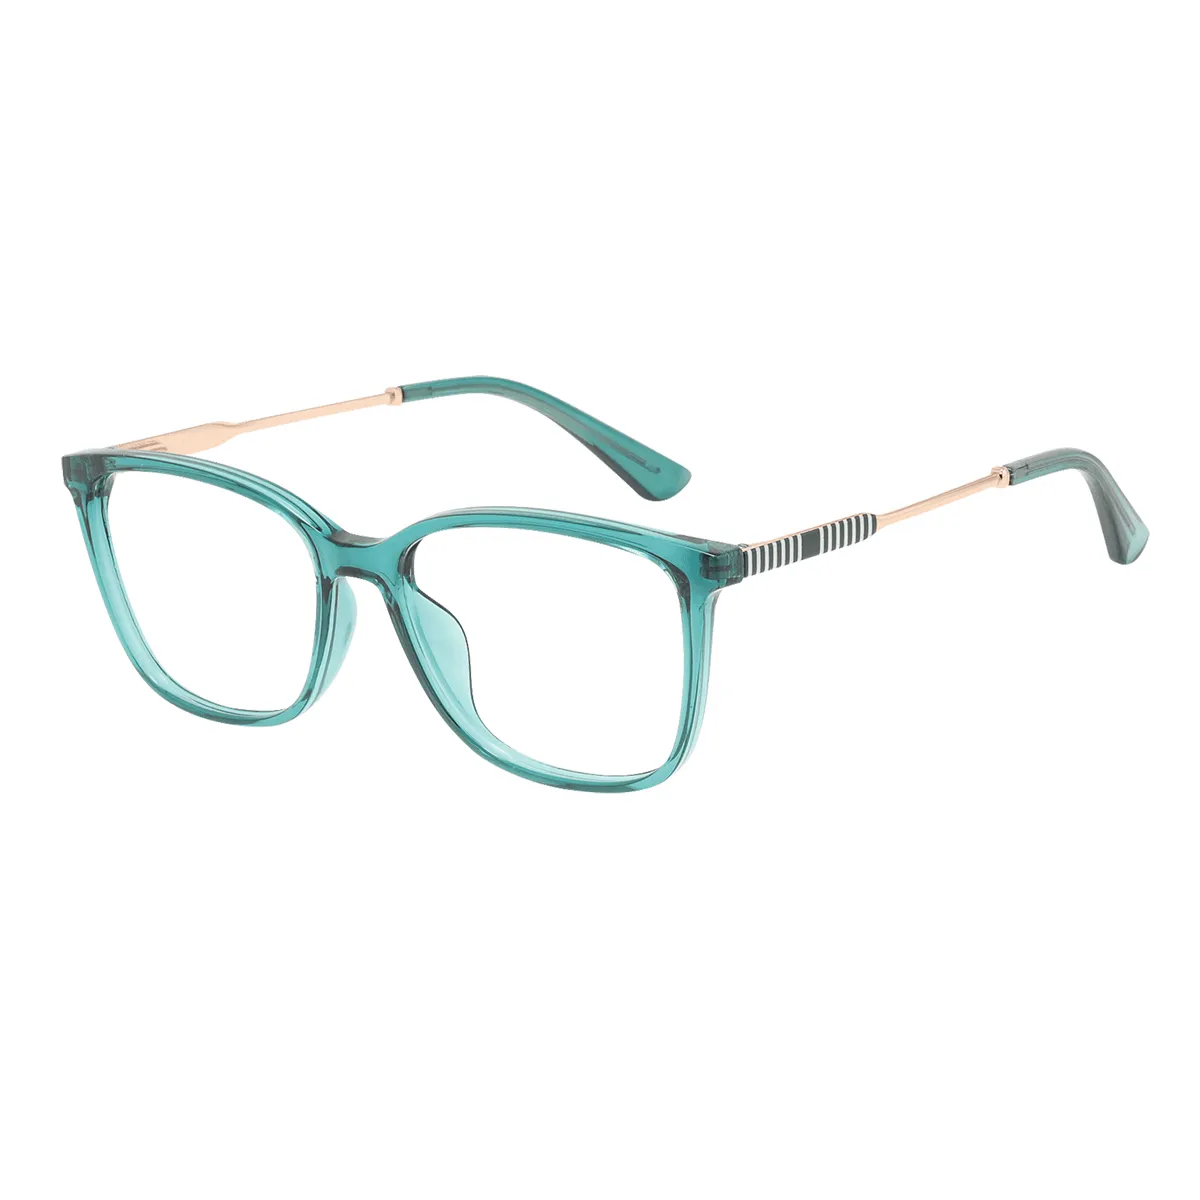 Huber - Square Green Glasses for Women